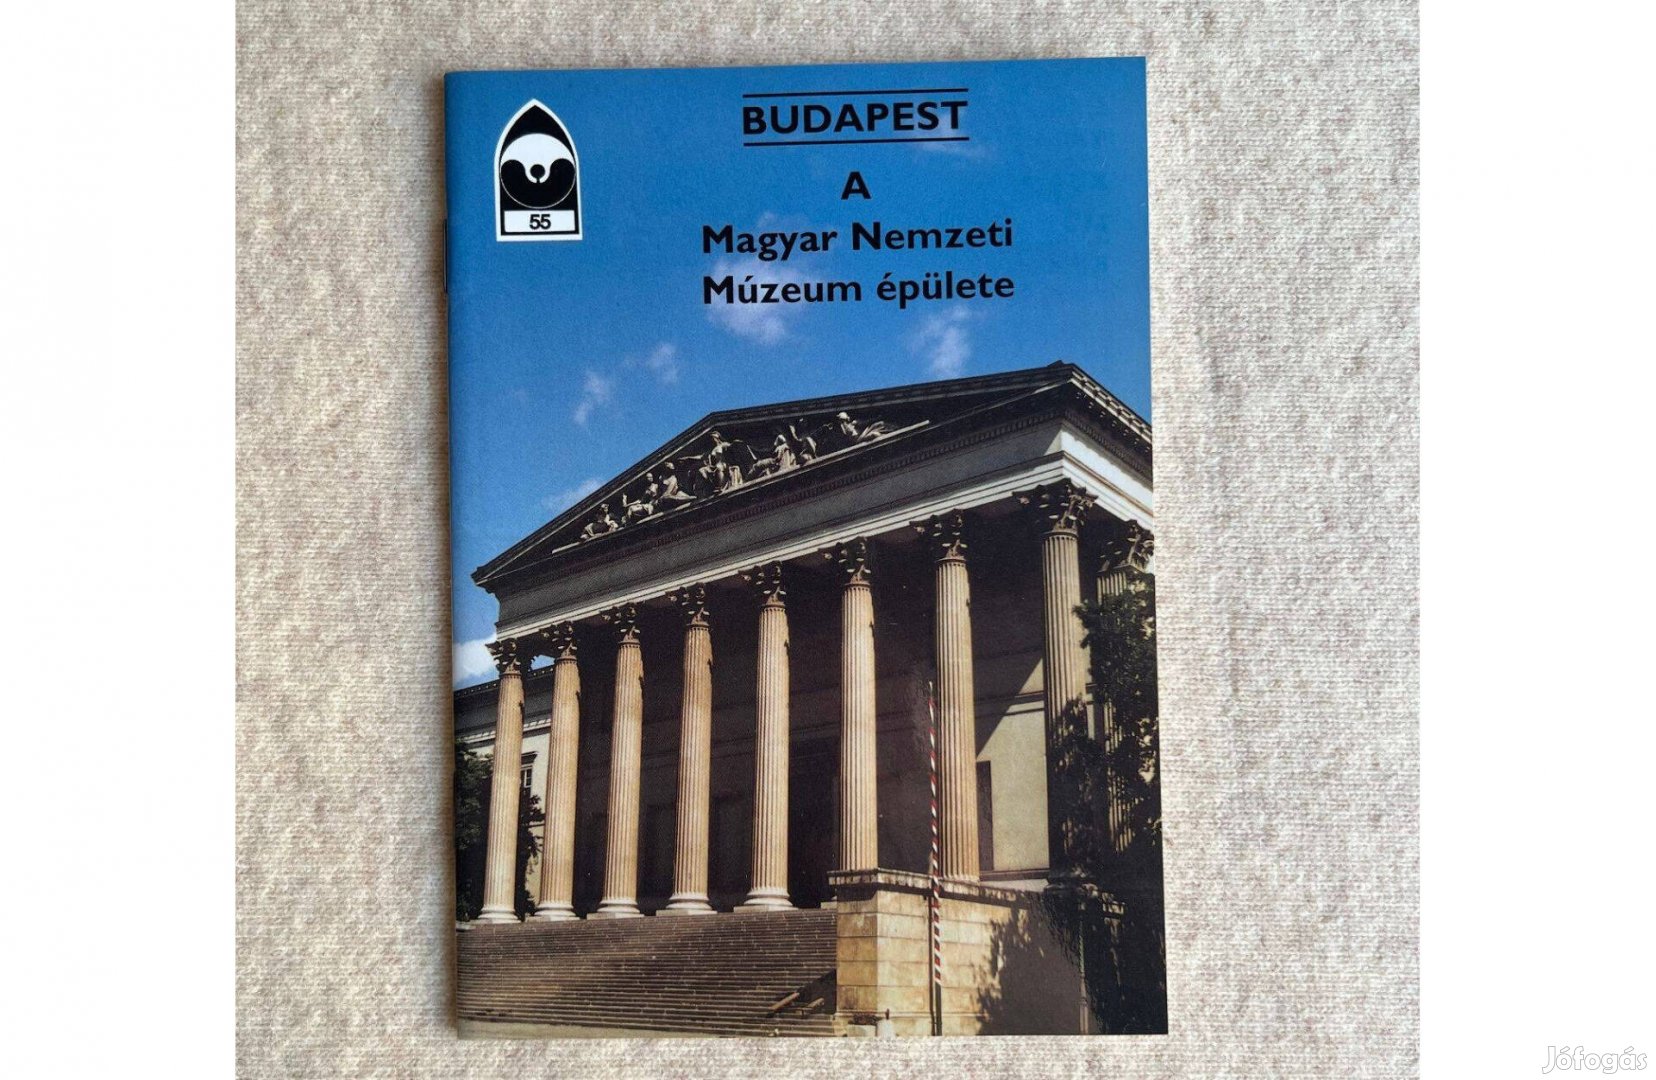 A Magyar Nemzeti Múzeum épülete